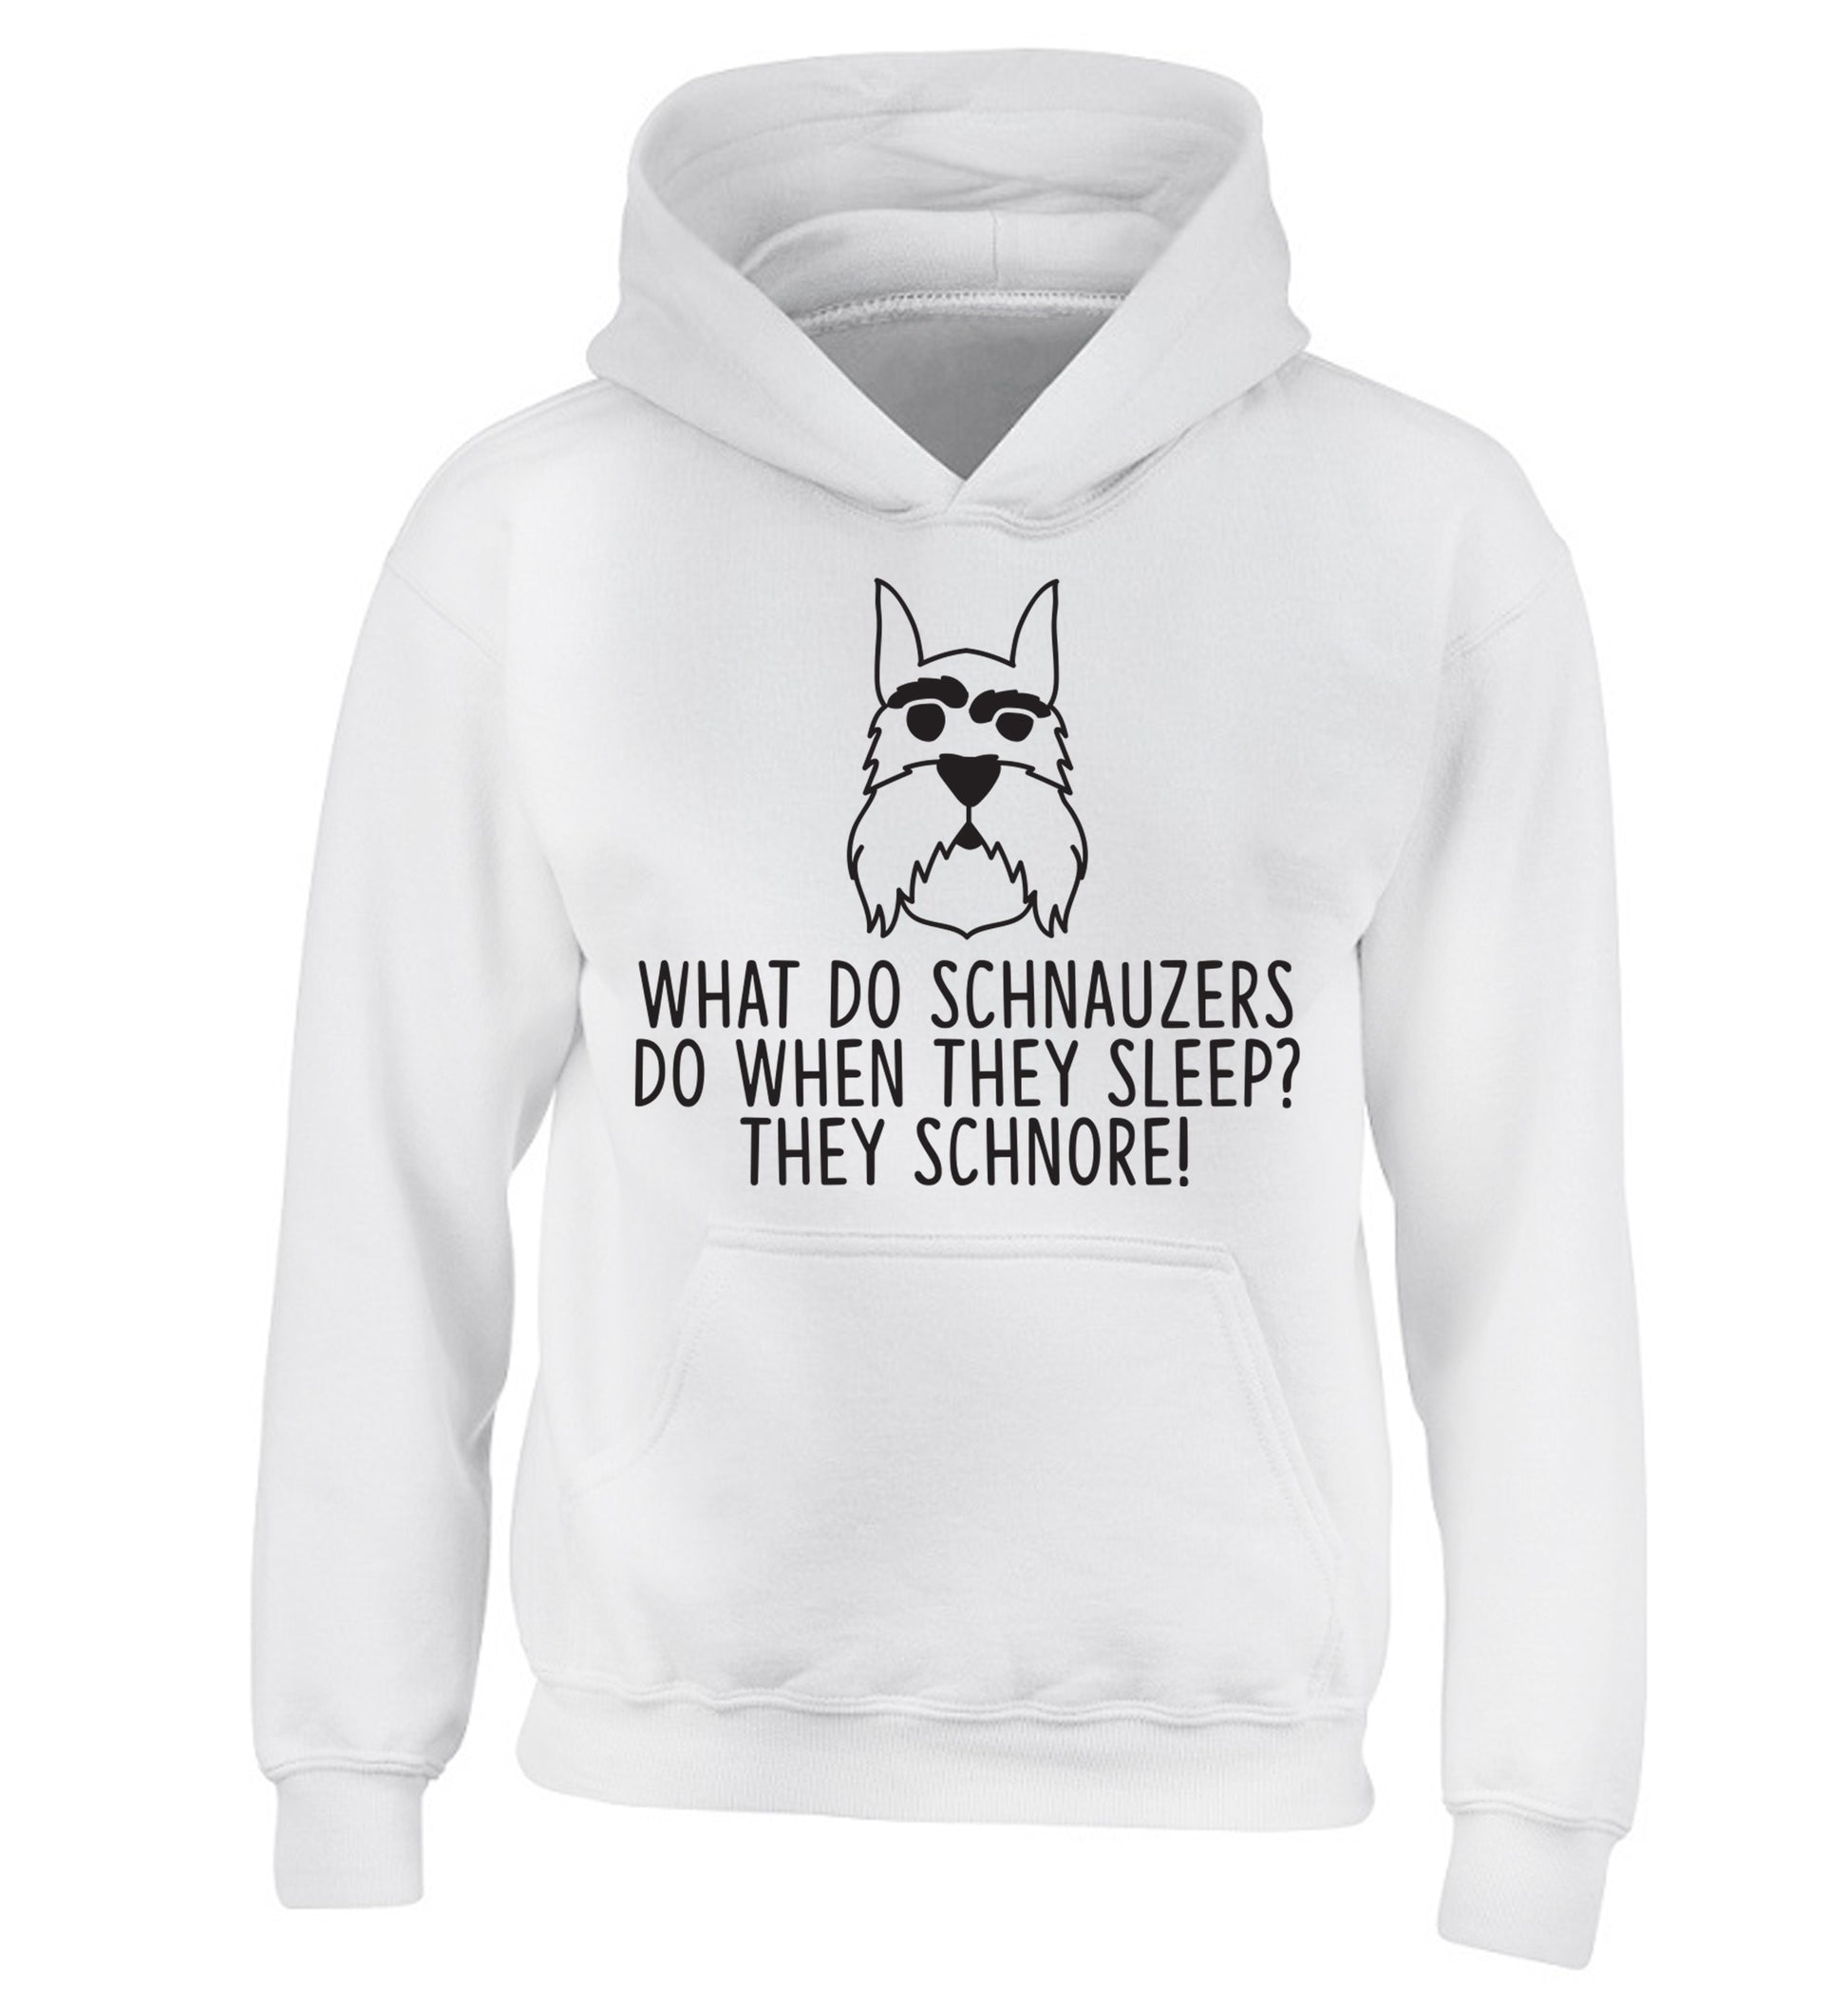 What do schnauzers do when they sleep? Schnore! children's white hoodie 12-13 Years